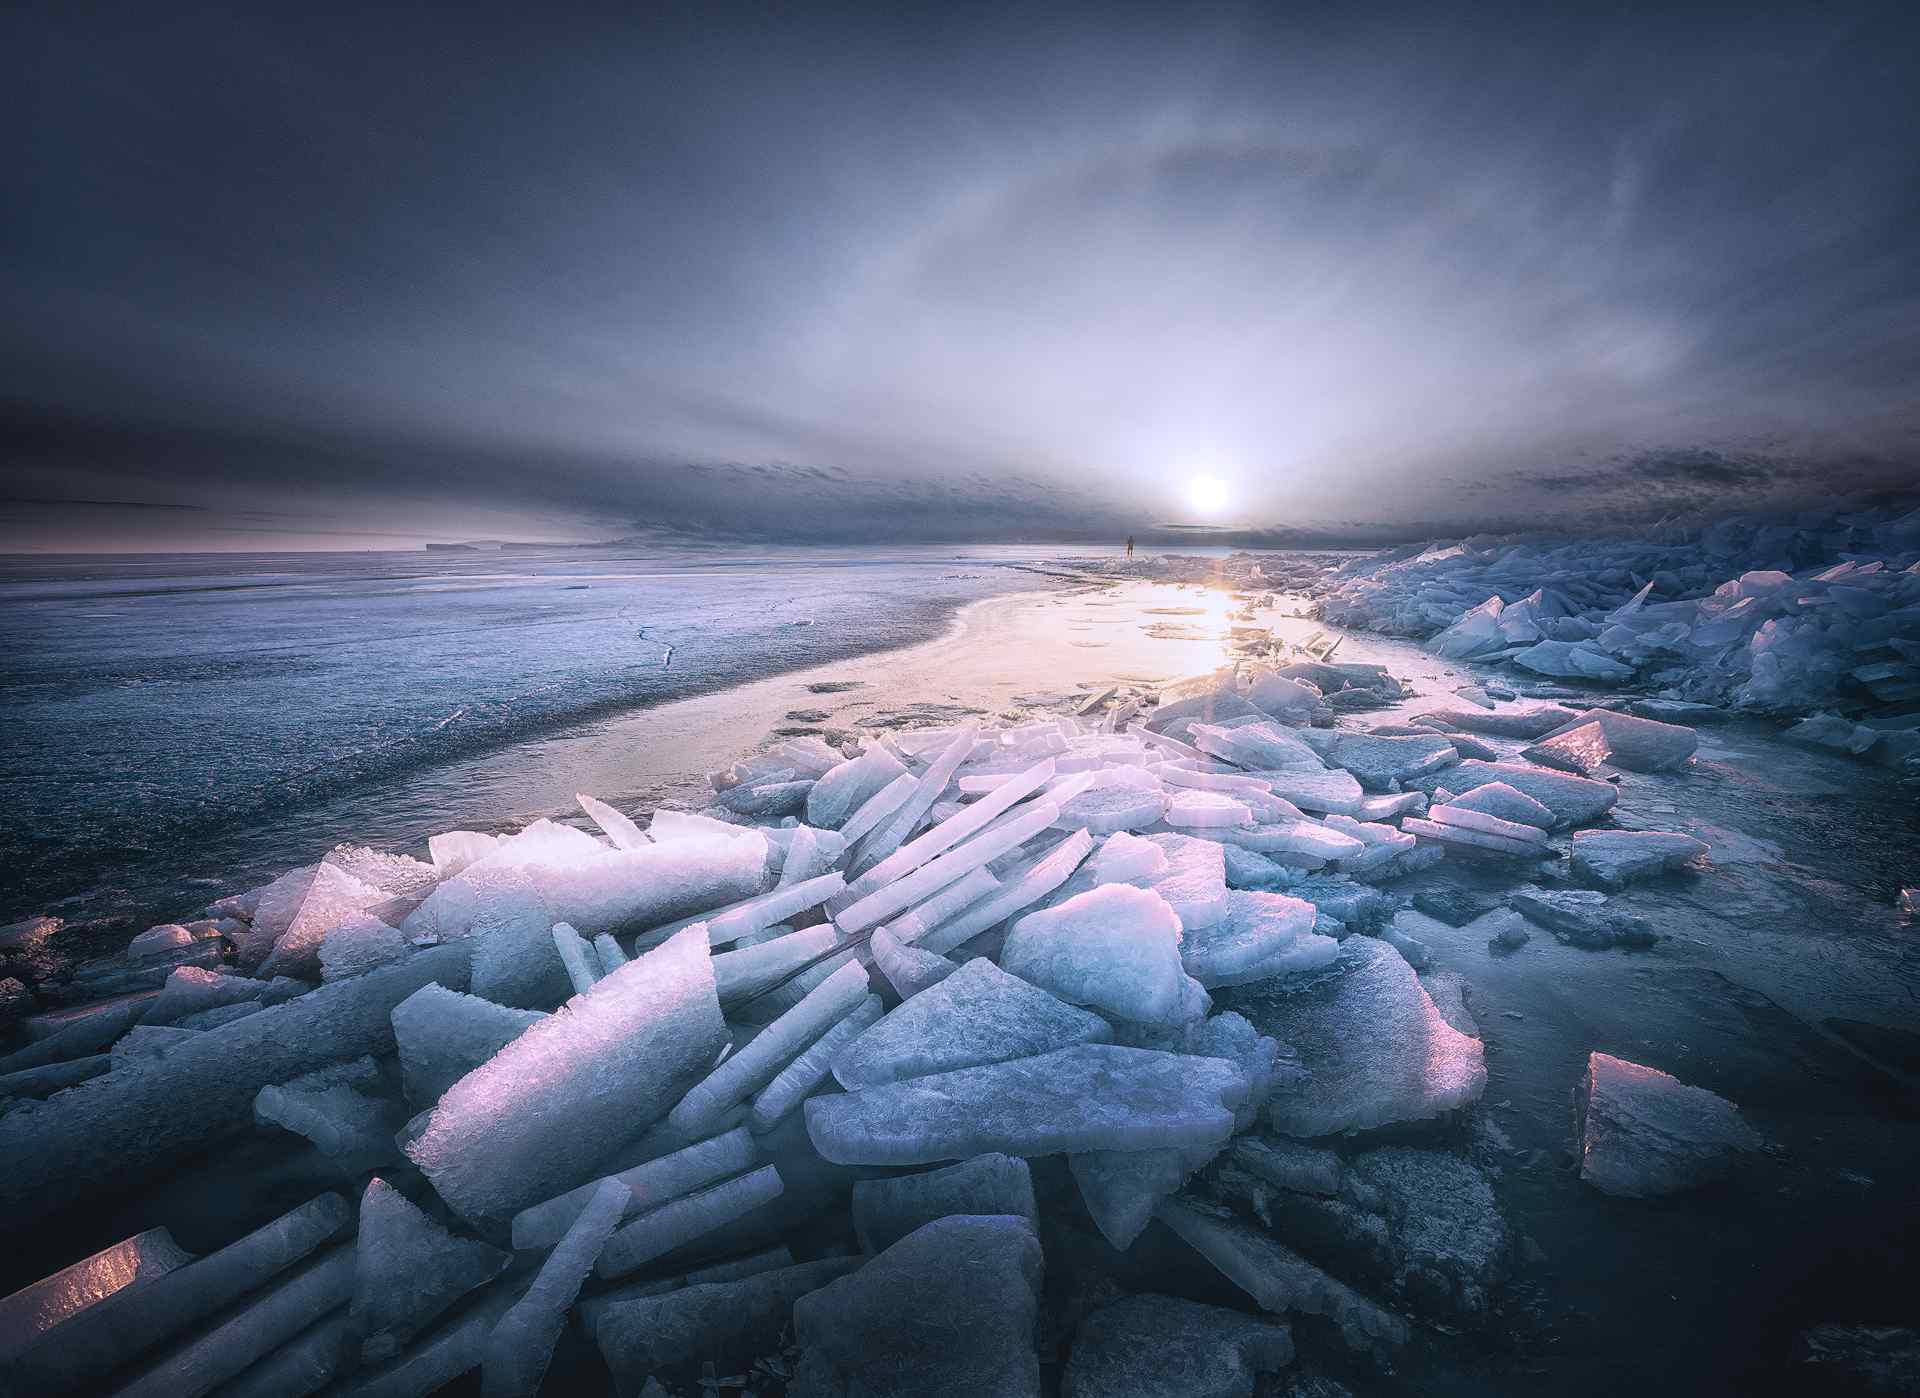 唯美贝加尔湖冰凌景观图片桌面壁纸